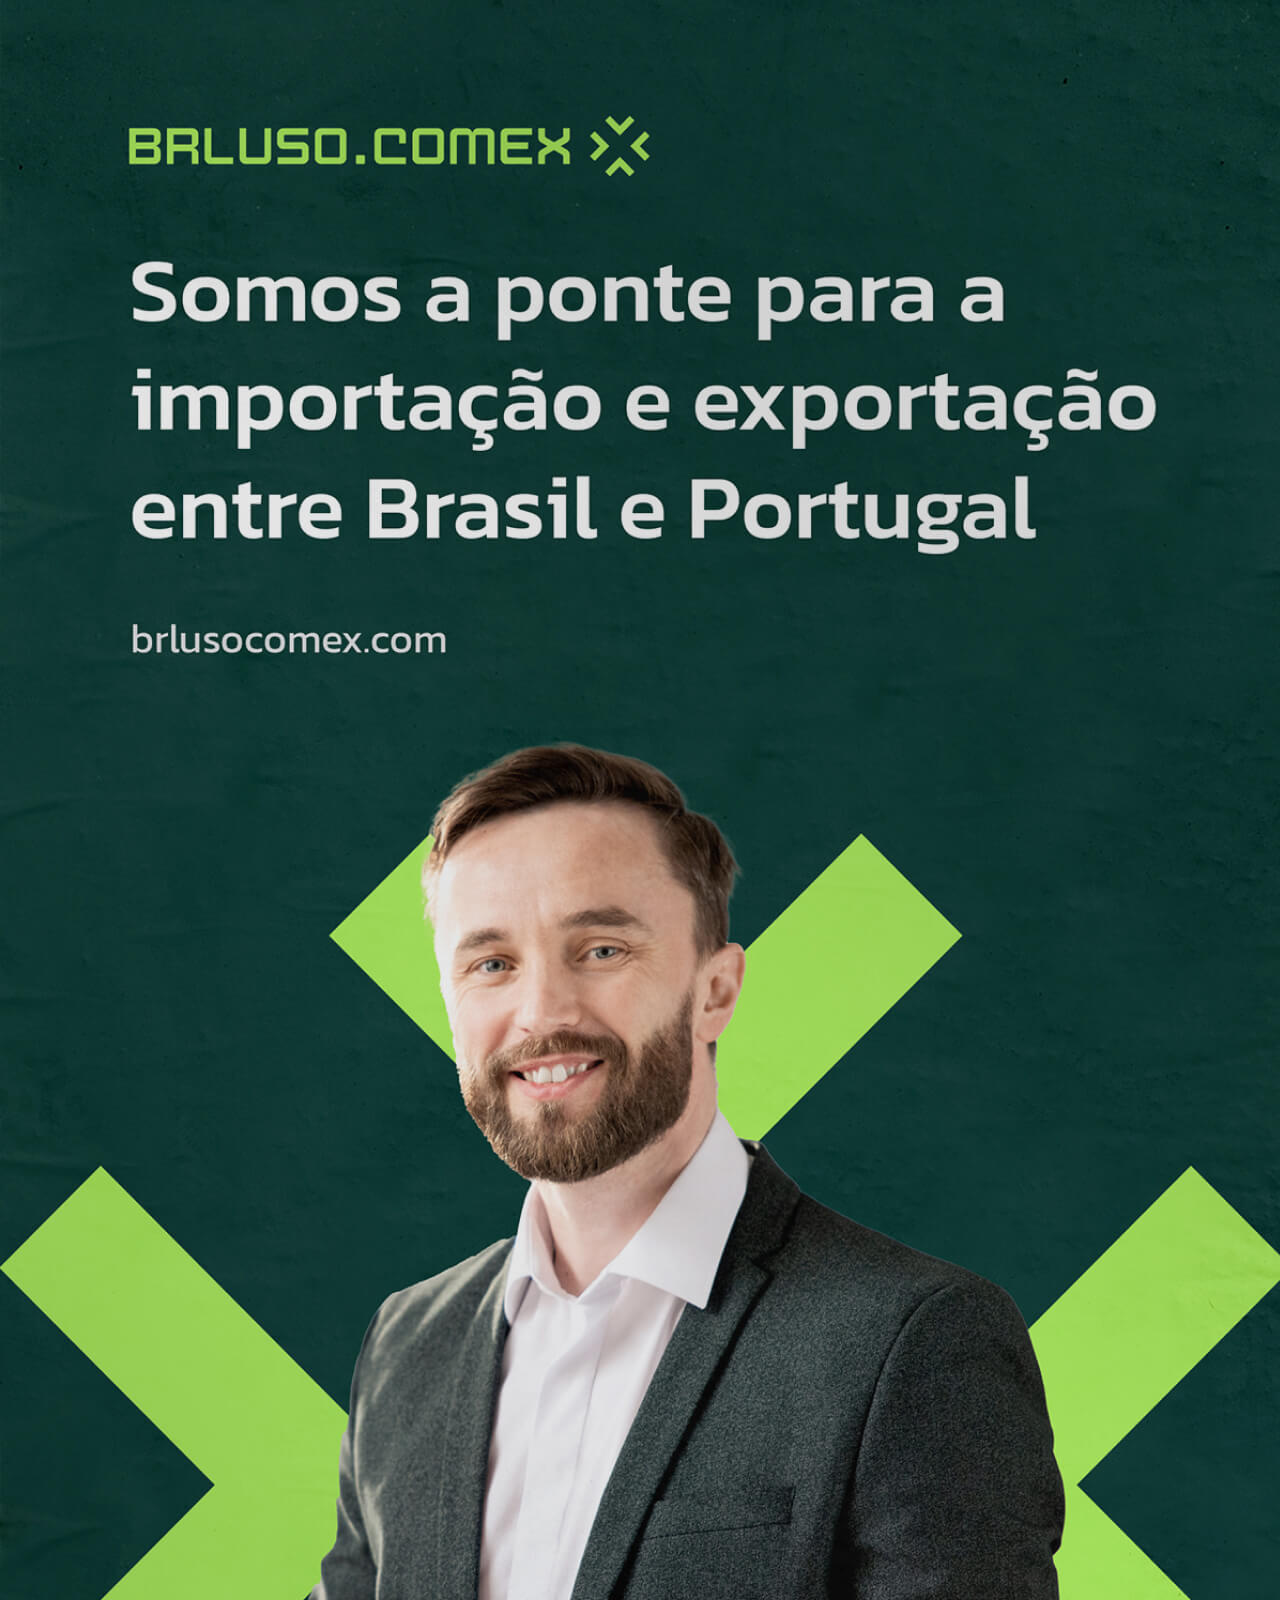 Poster com a identidade visual com um homem e o texto "Somos a ponte para a importação e exportação entre Brasil e Portugal.